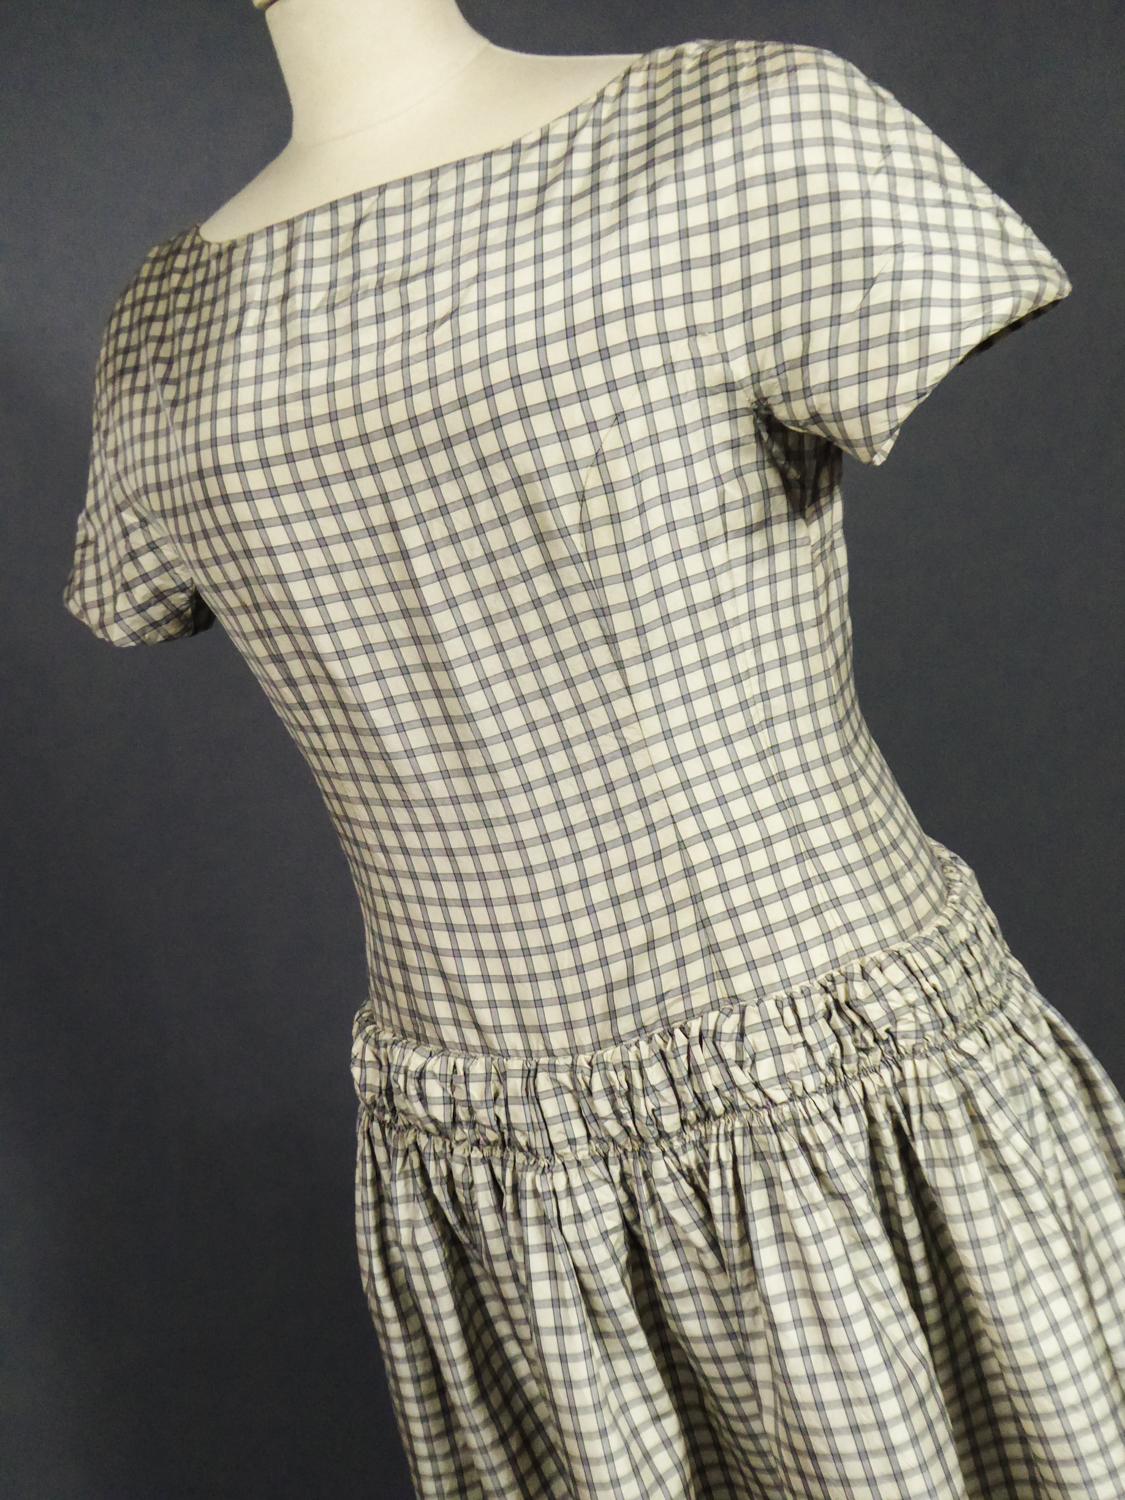 A Cristobal Balenciaga Couture Sac Dress in Plaid Taffeta n°55418 Circa 1958 9